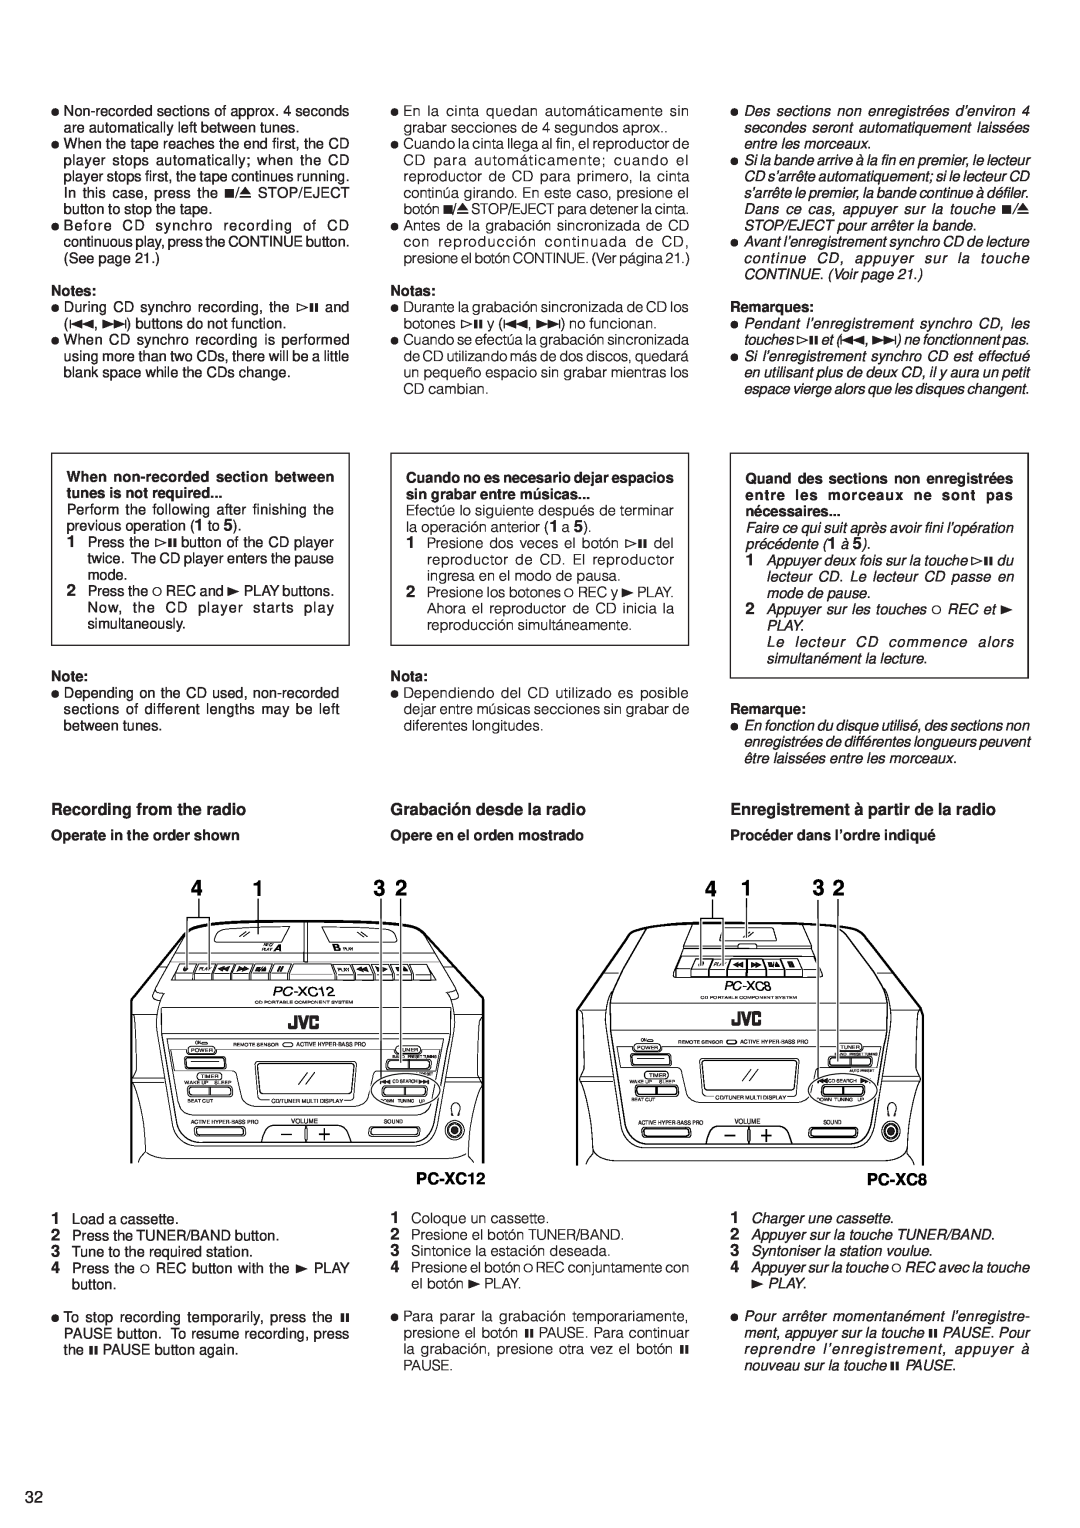 JVC PC-XC8 manual Recording from the radio, Grabación desde la radio, Enregistrement à partir de la radio, PC-XC12 